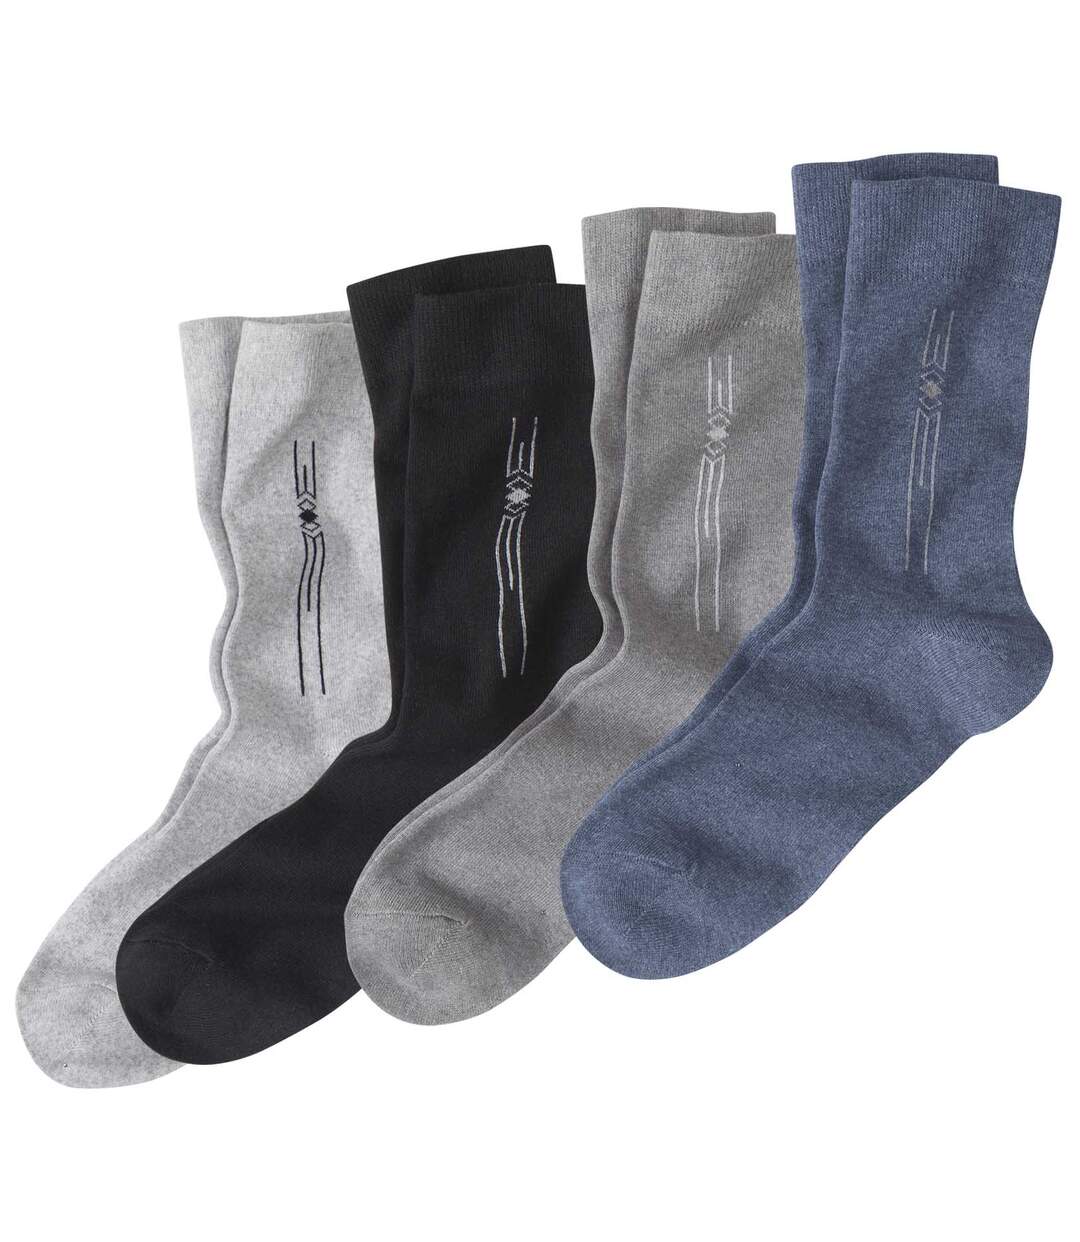 Pack of 4 Pairs of Men's Patterned Socks - Mottled Gray Black Blue Atlas For Men